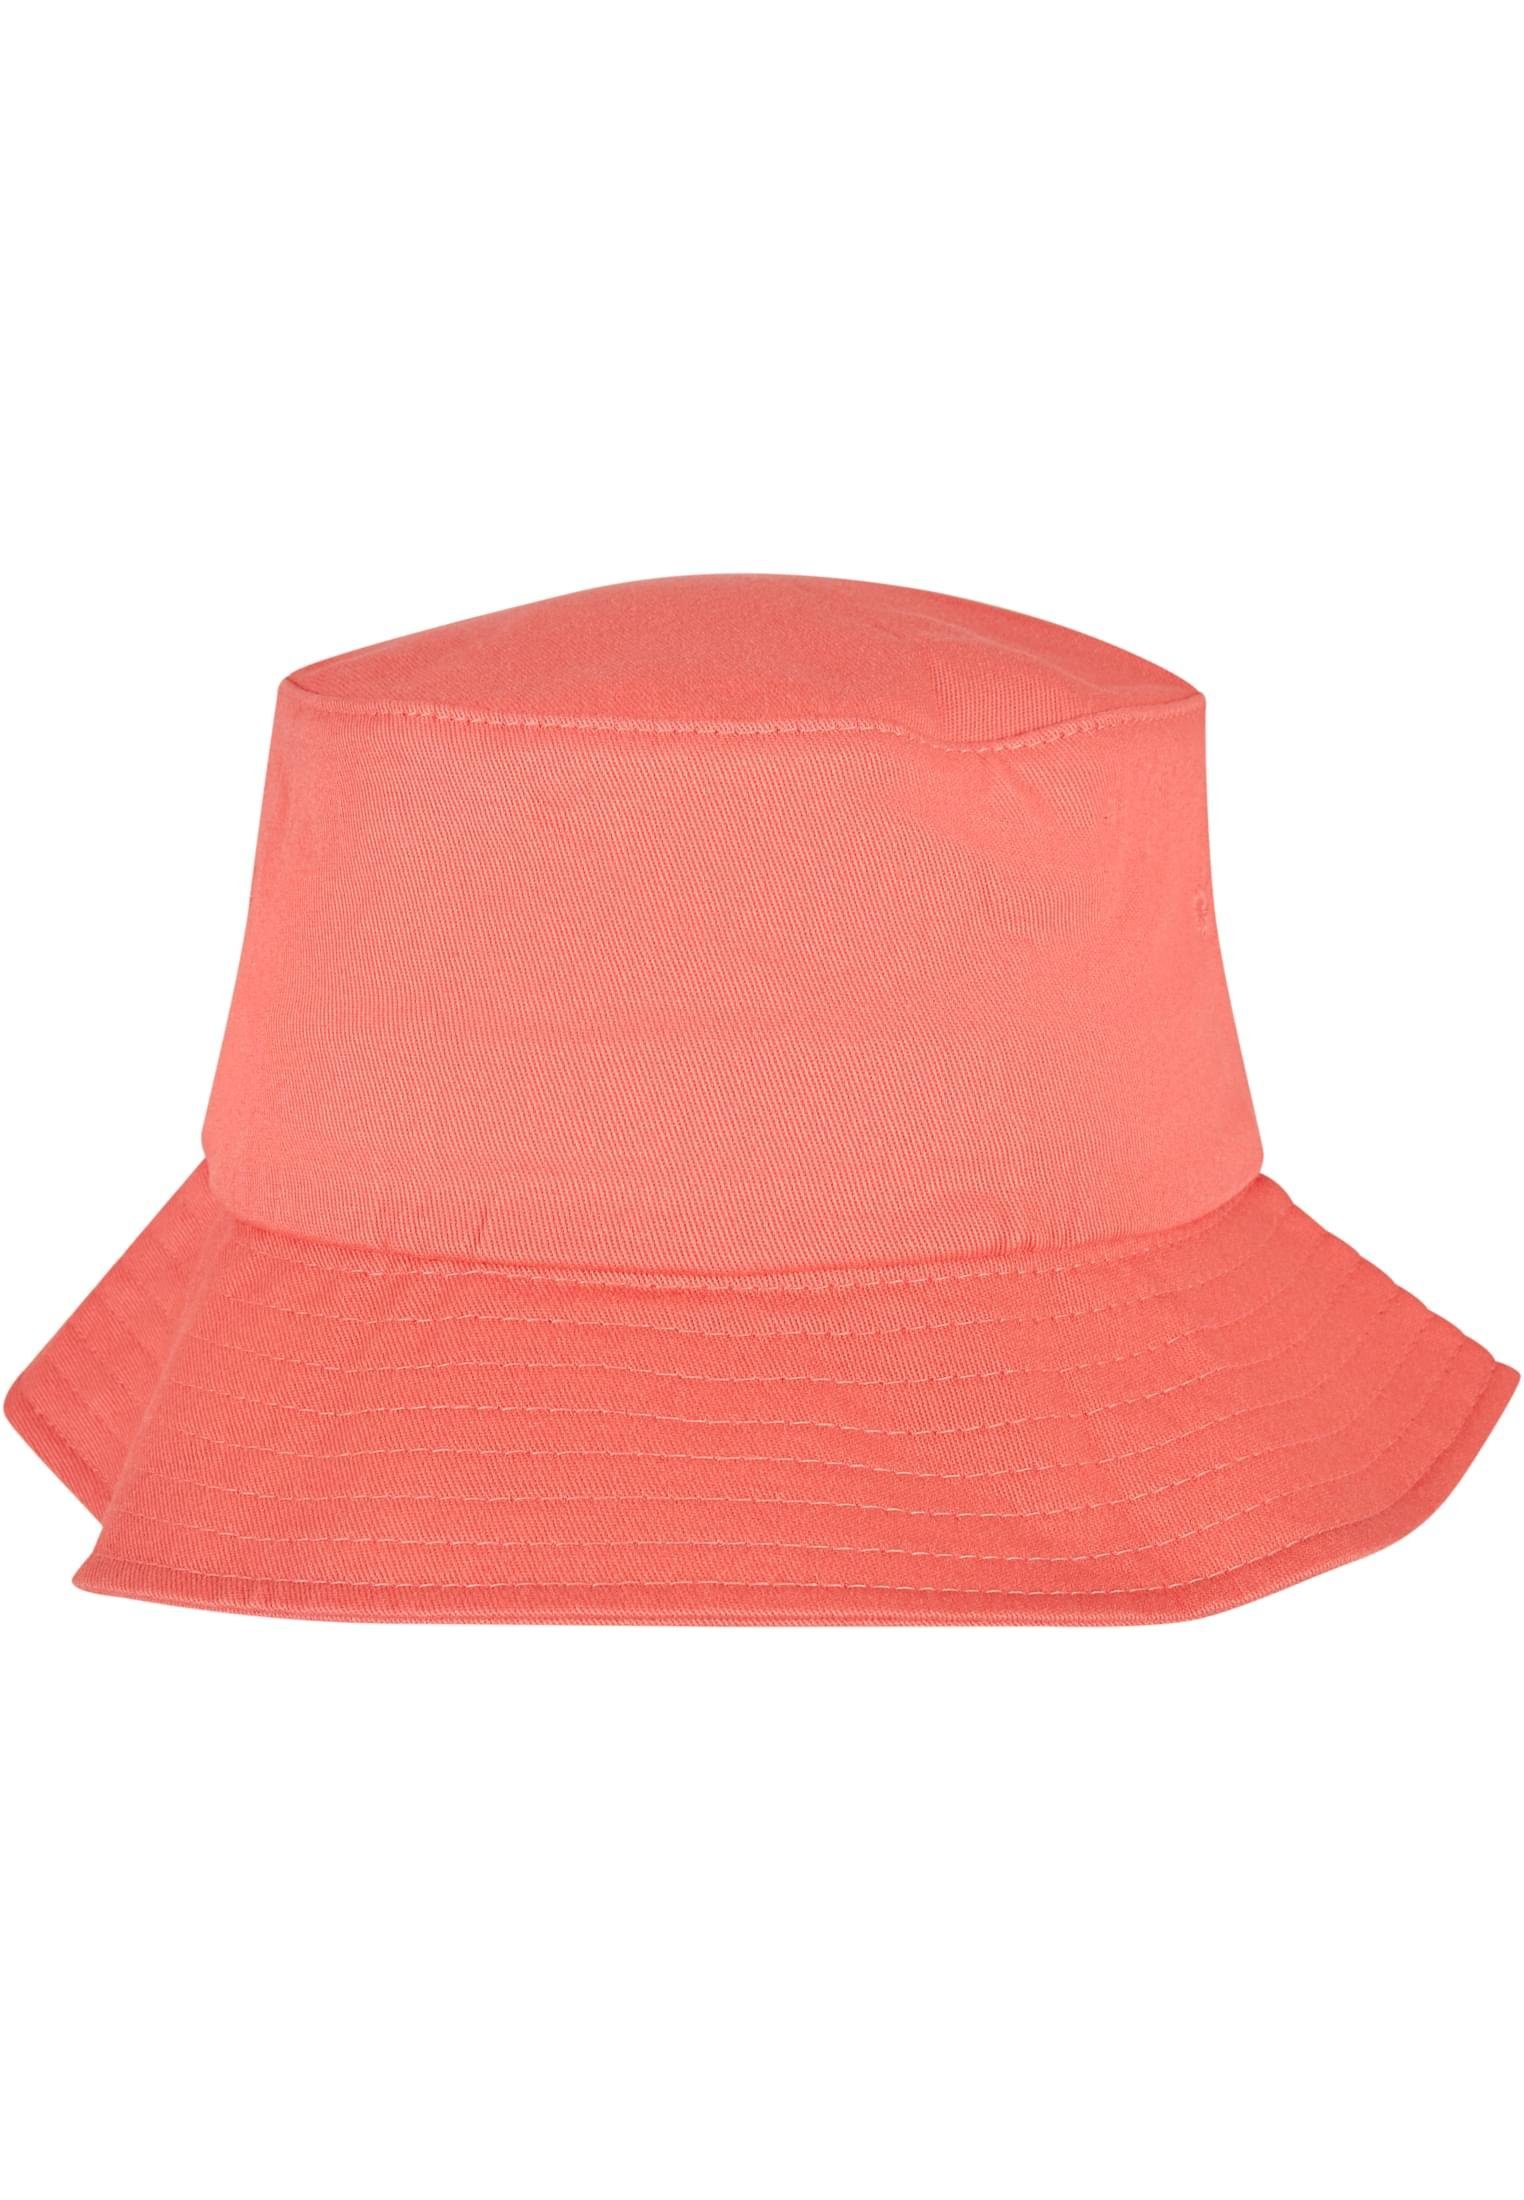 Twill Flexfit Flexfit Cap Accessoires Cotton Hat Bucket Flex spicedcoral